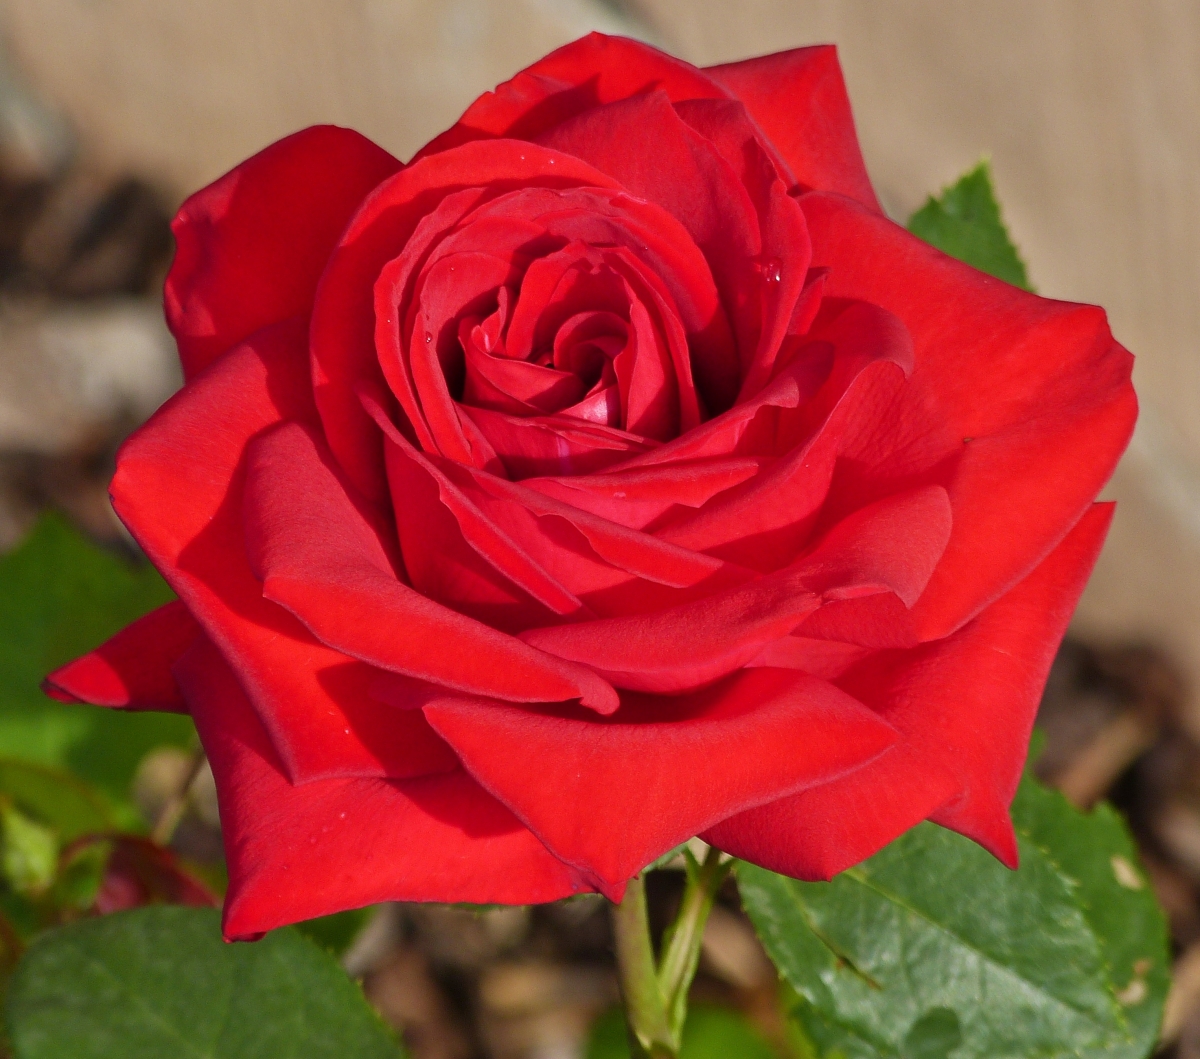 Rosenblüte in unserem Vorgarten. 26.06.2021